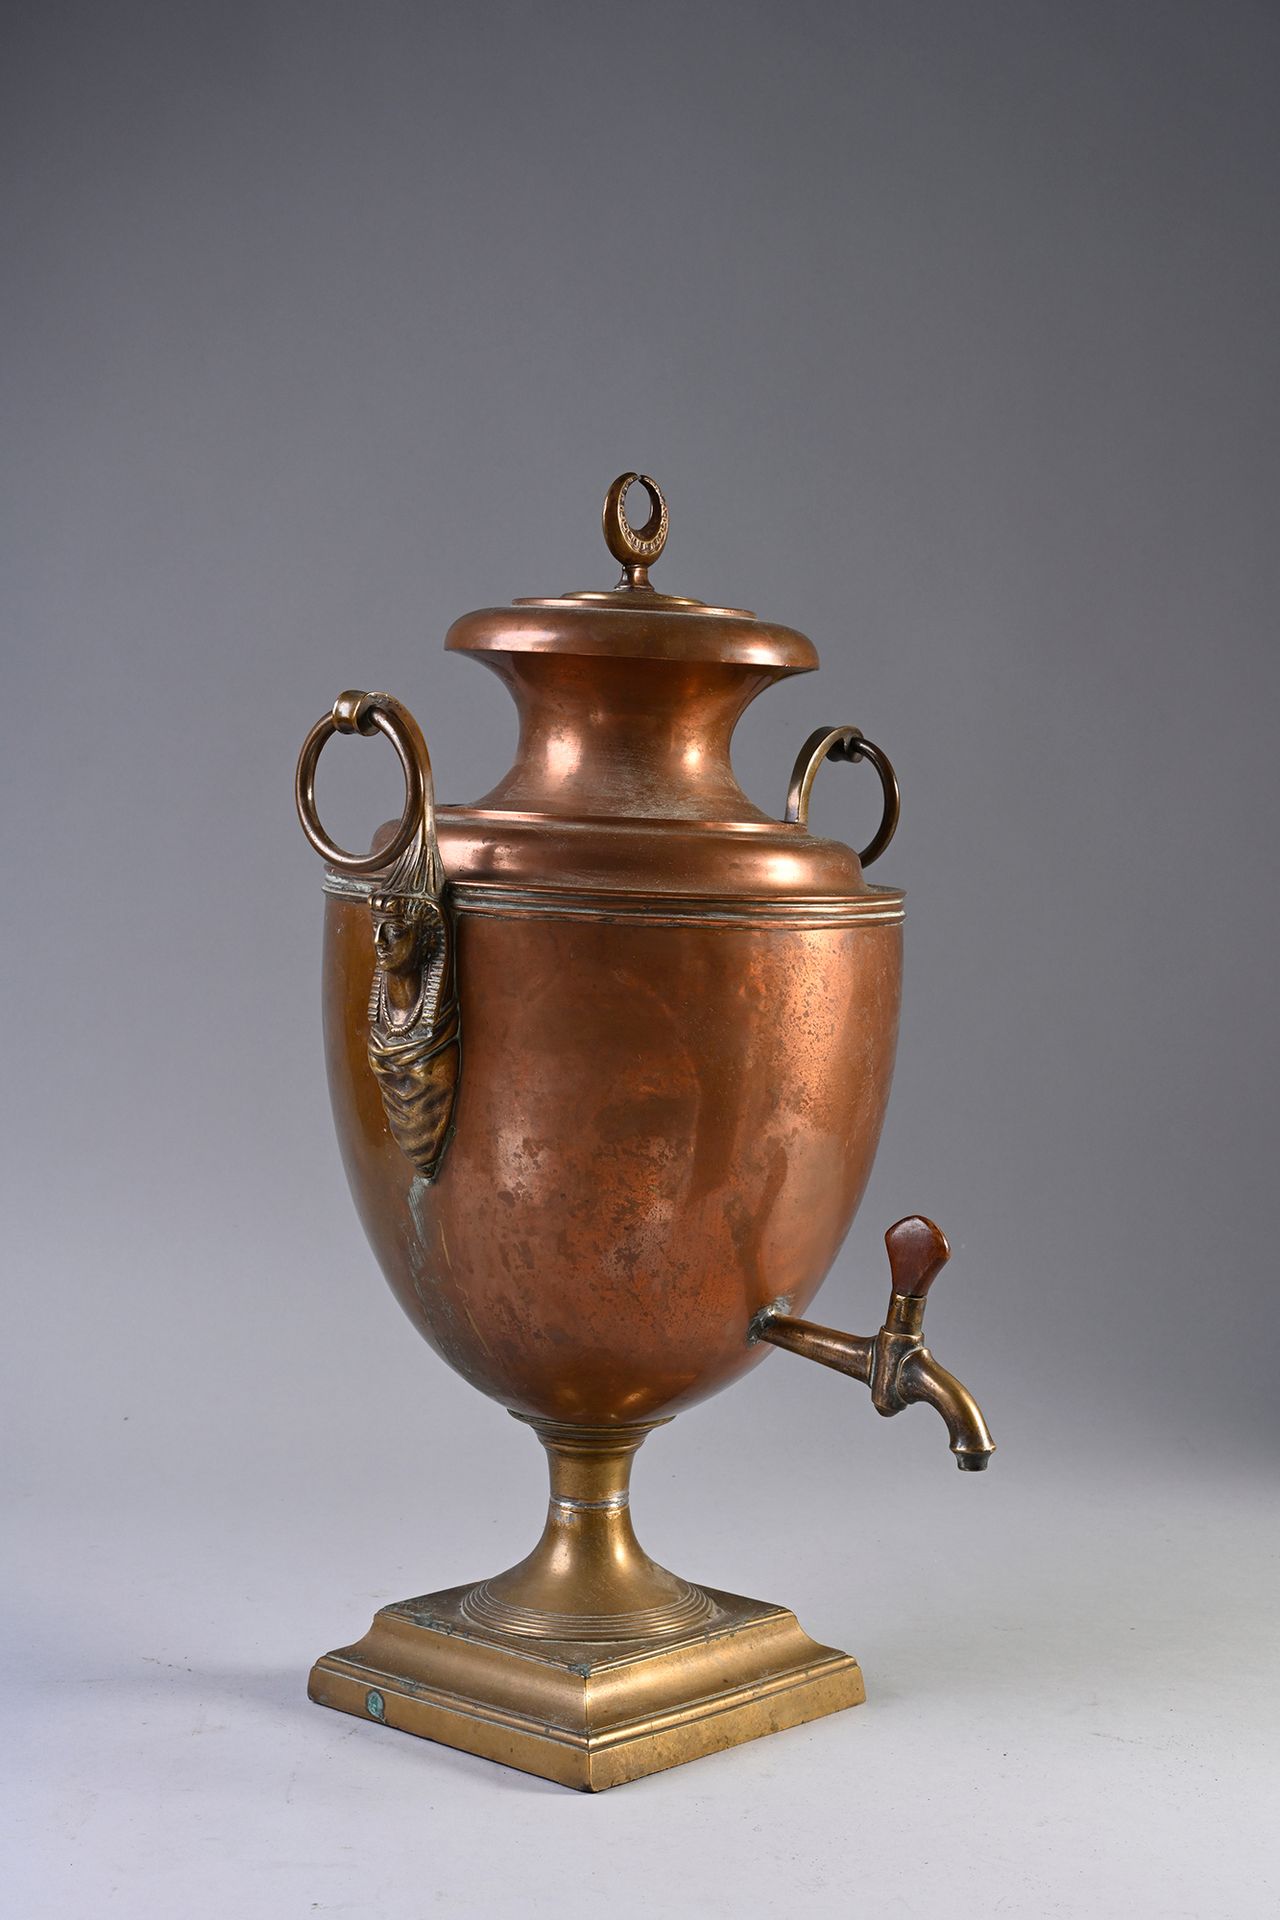 Null 优雅的红铜茶炊。
俄罗斯作品，19世纪初。
瓮的形状，安放在一个黄铜的方形底座上，侧面有镂空的环形抓手，最后是埃及风格的妇女头像，上部有一个月牙。包括&hellip;